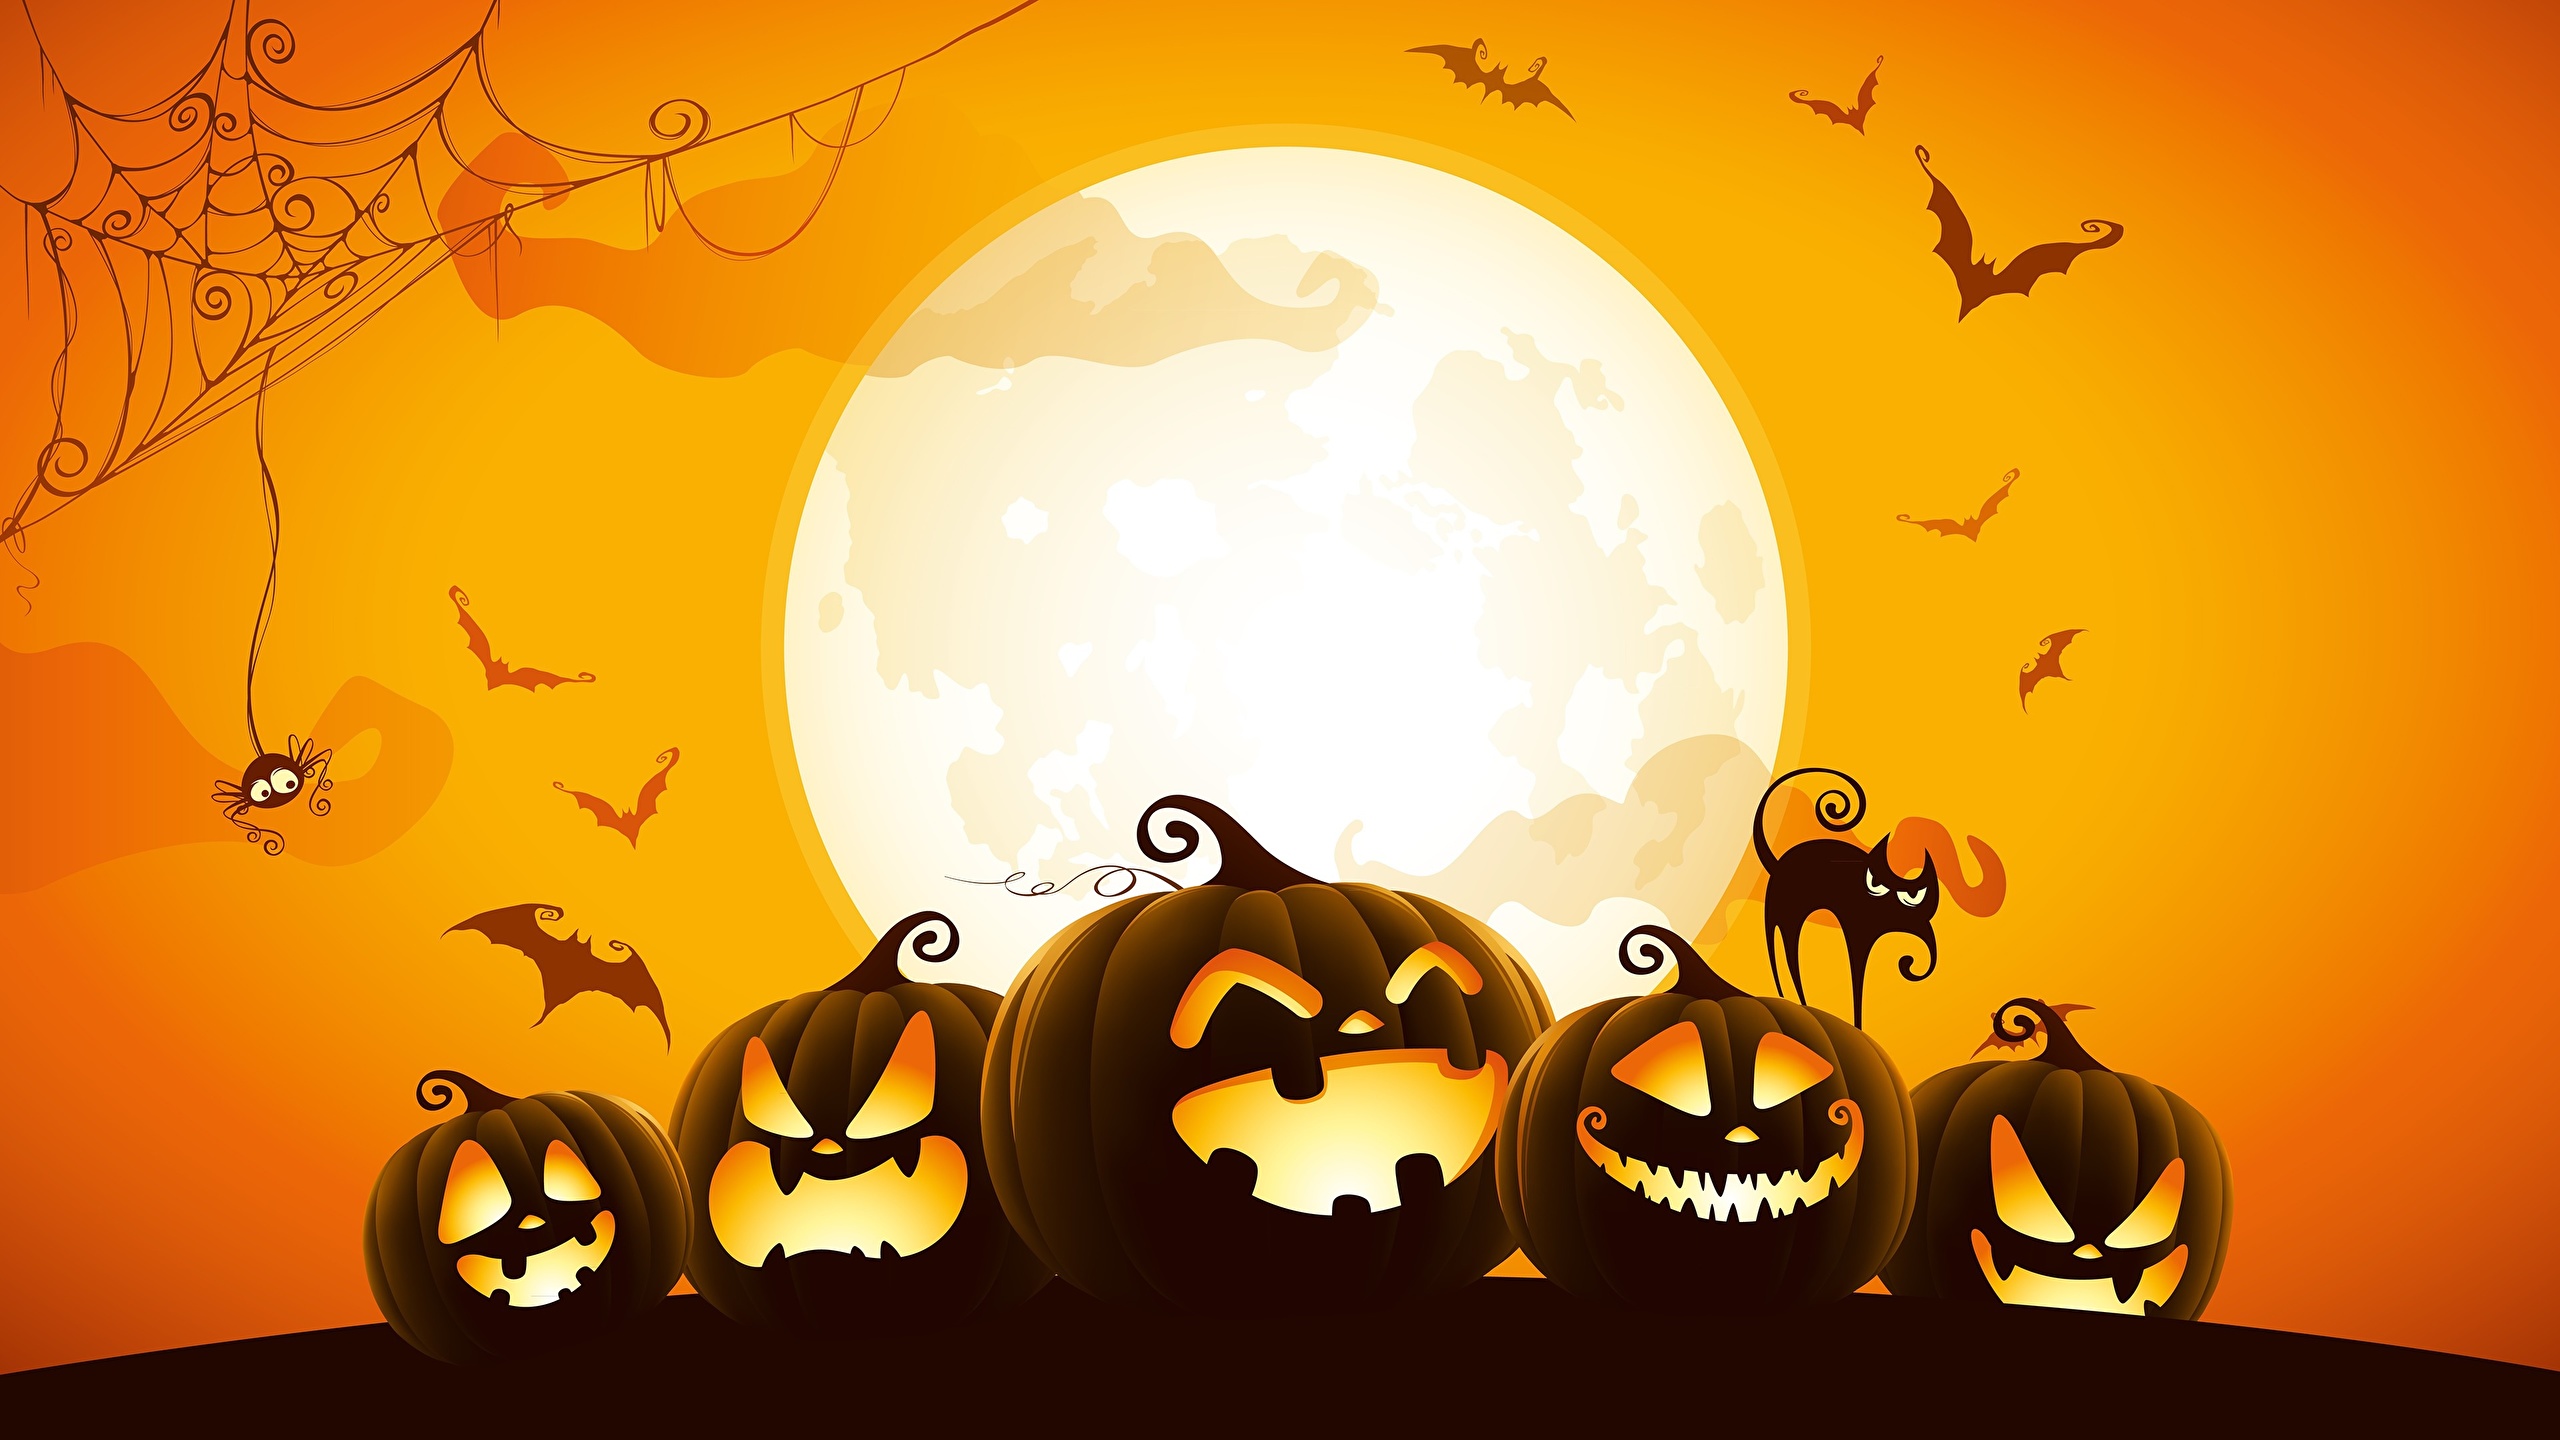 Image Pumpkin Halloween Moon Vector Graphics 2560x1440